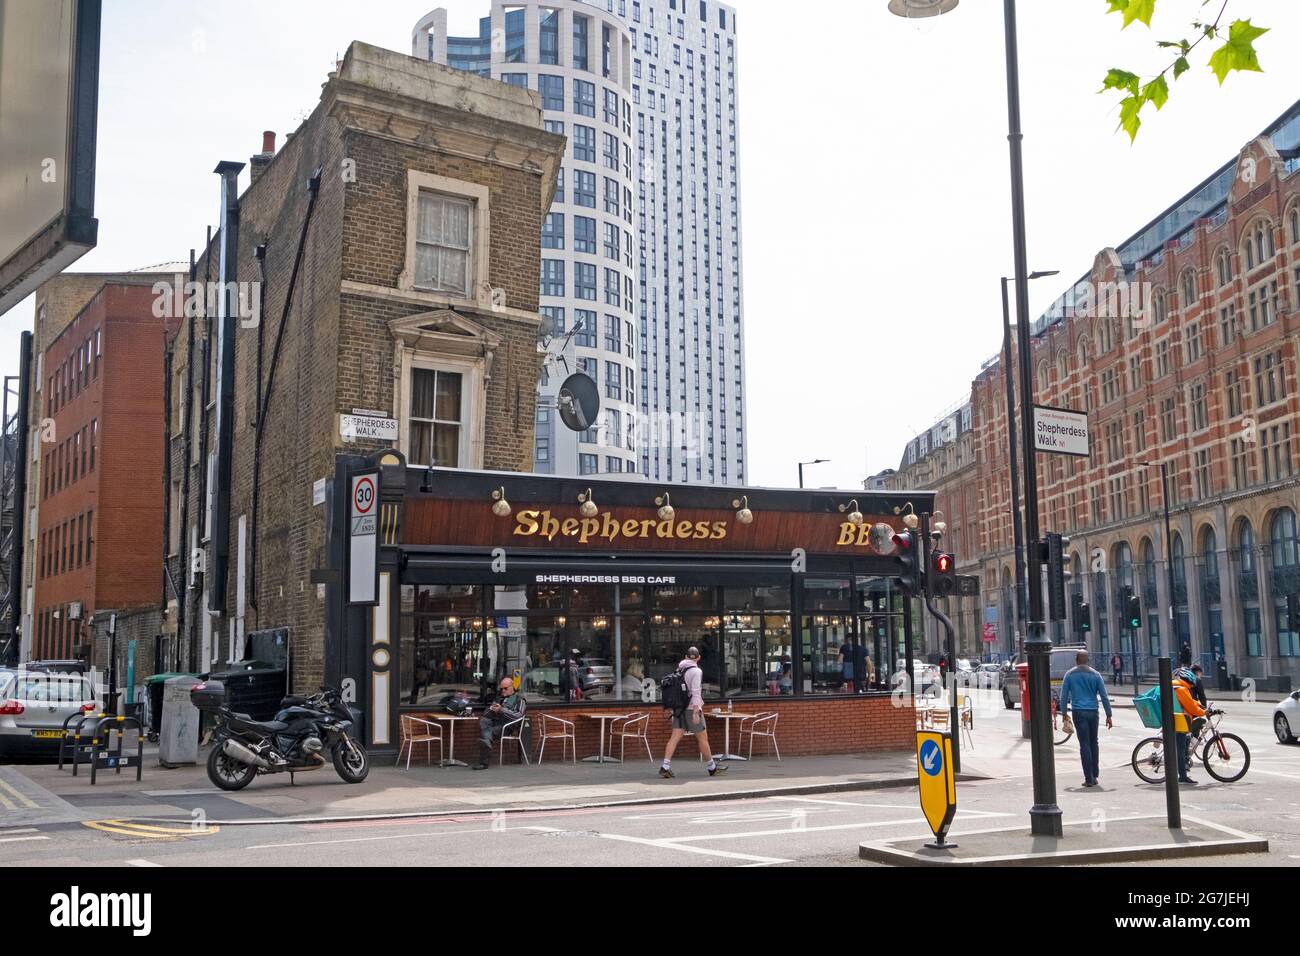 Shepherdess Cafe, à l'angle de Shepherdess Walk & City Road, fermé en juillet 2021 en raison de la pandémie de Covid et de l'augmentation des loyers Hoxton London UK KATHY DEWITT Banque D'Images